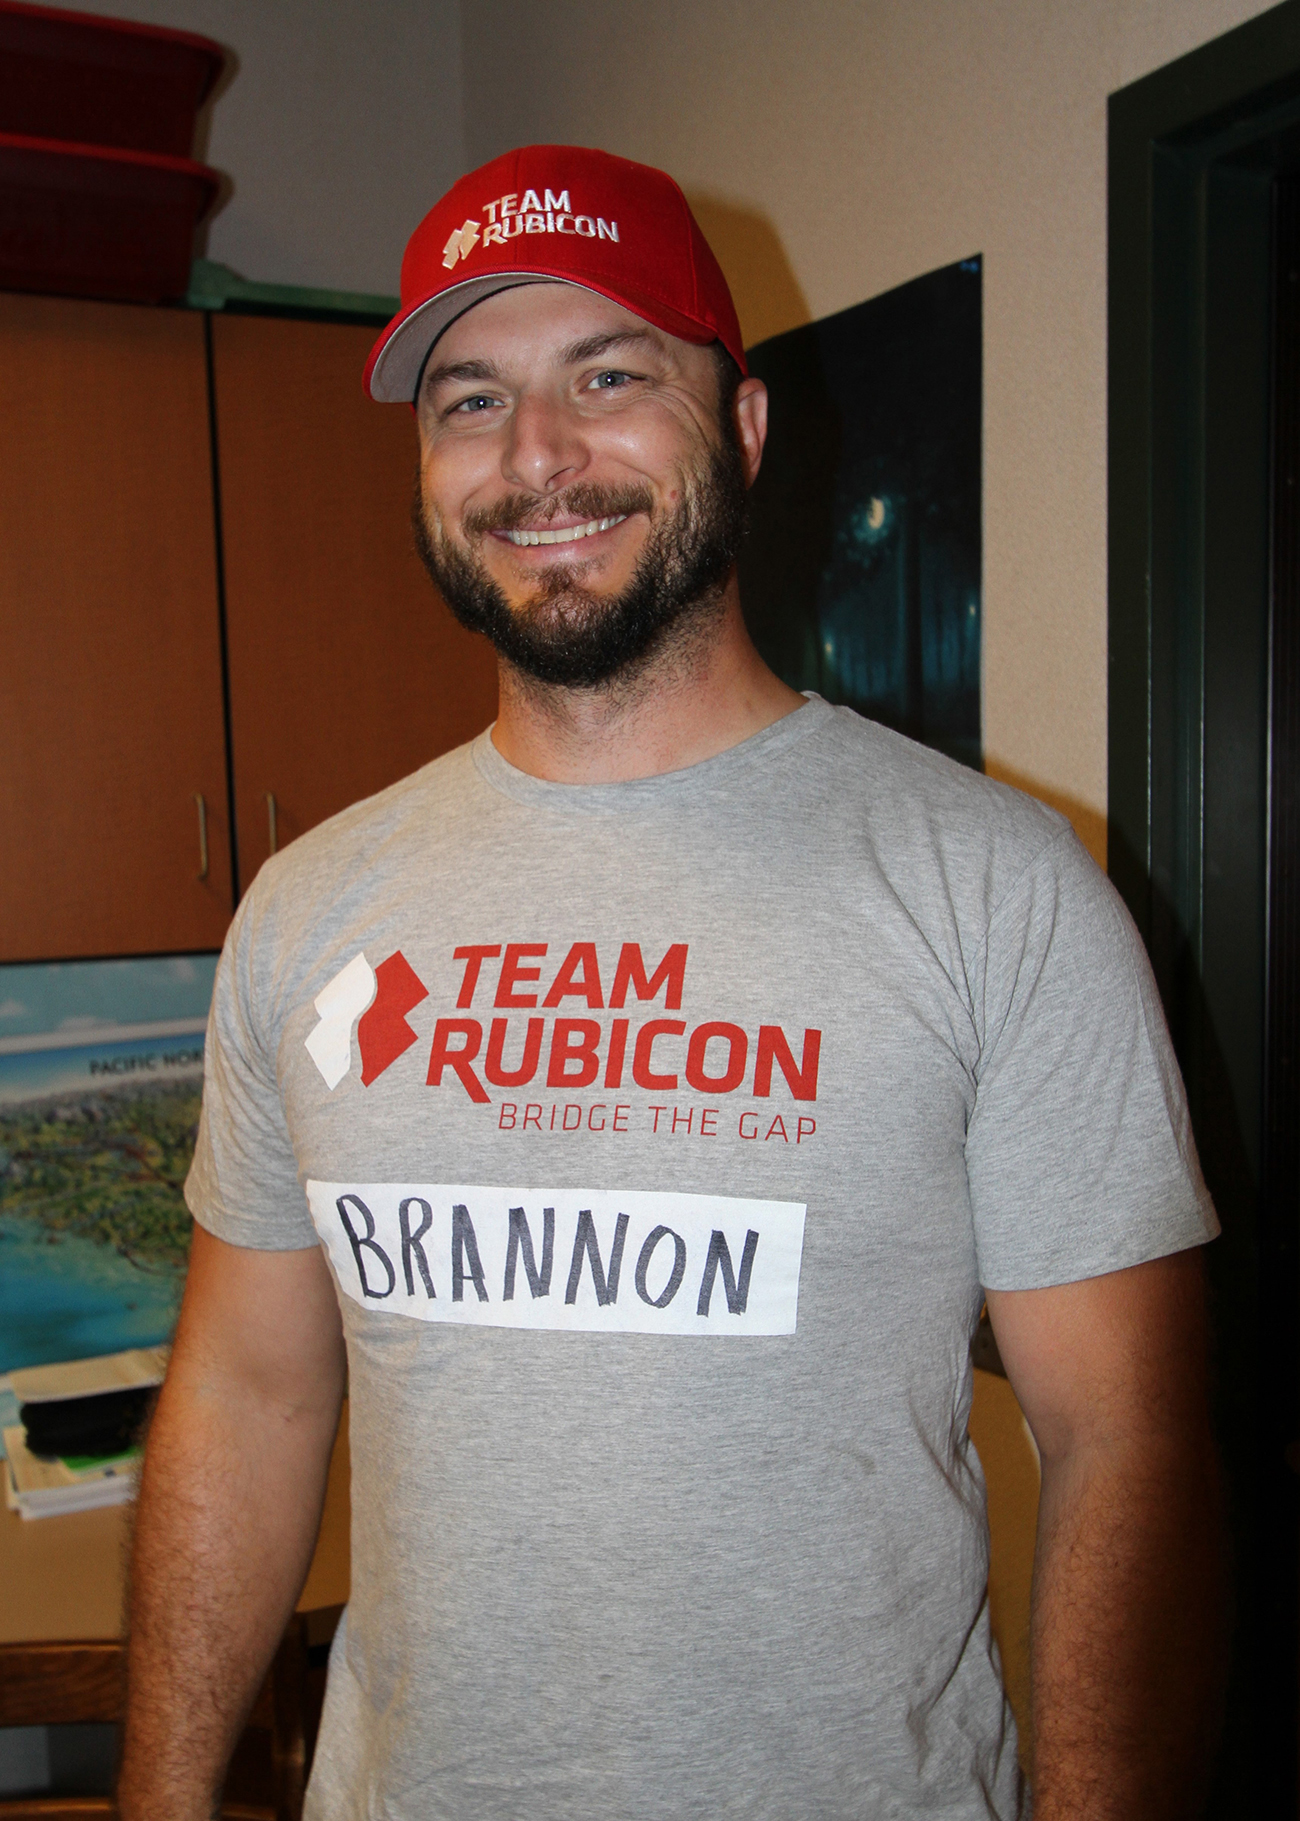 La photographie montre un homme portant une casquette Team Rubicon et une chemise Team Rubicon.